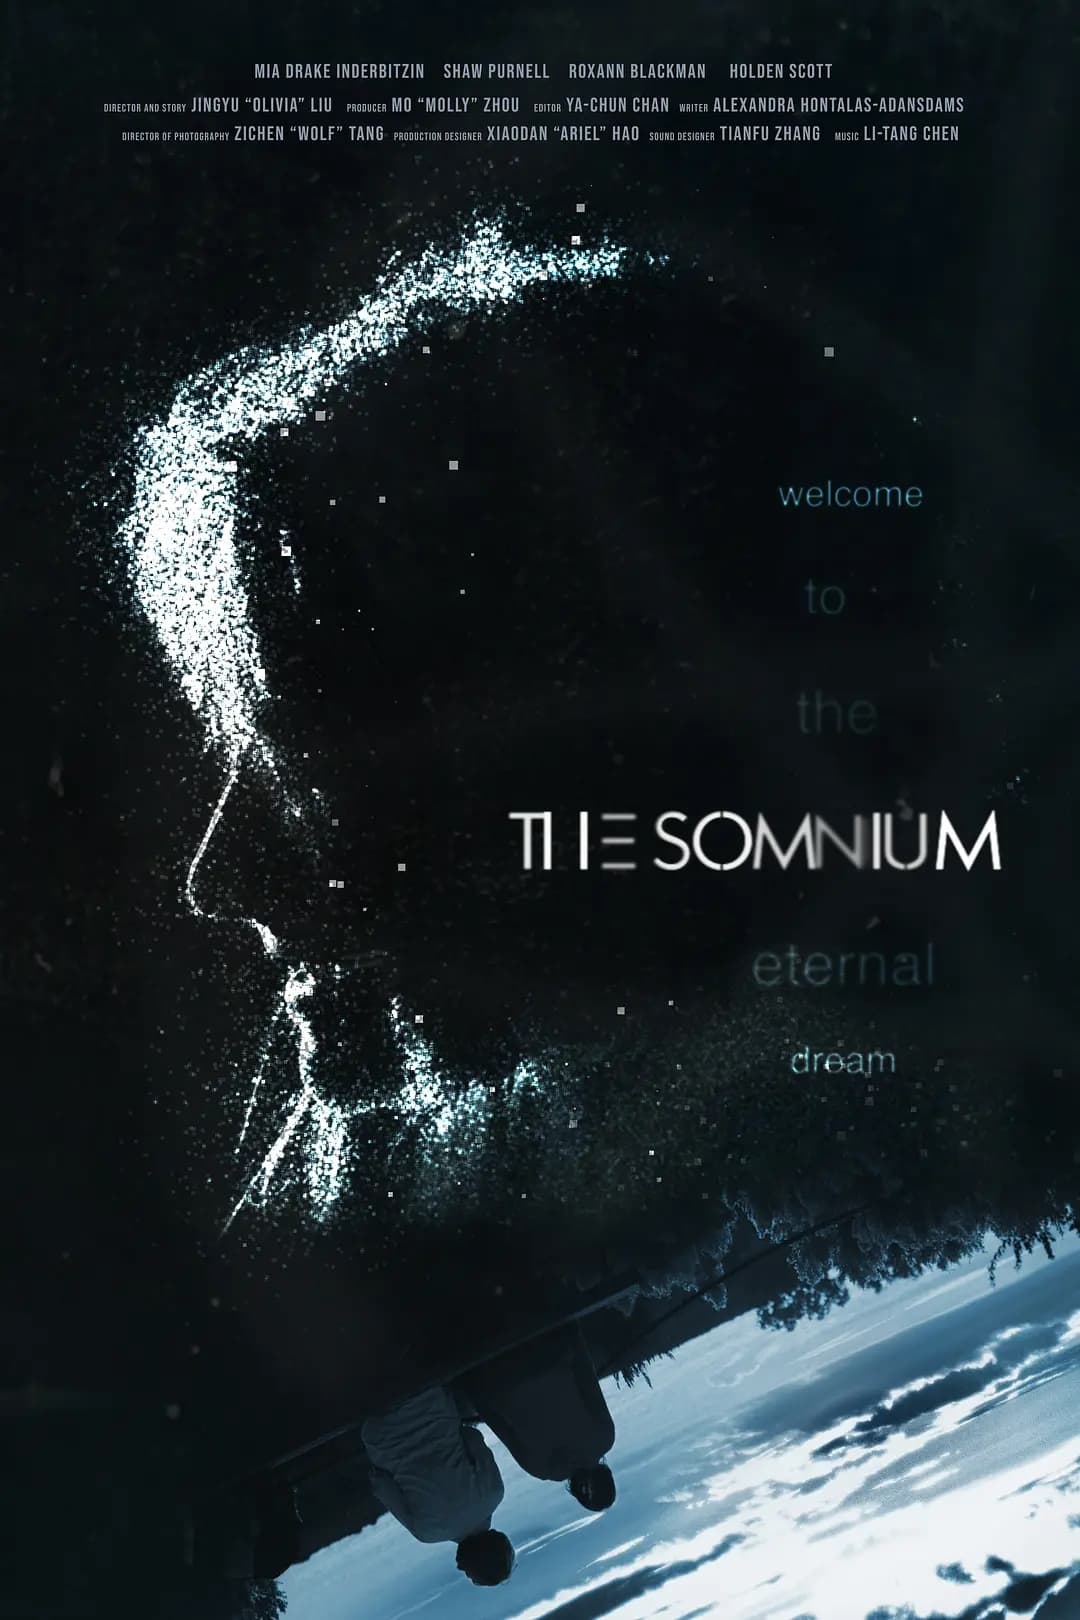 The Somnium